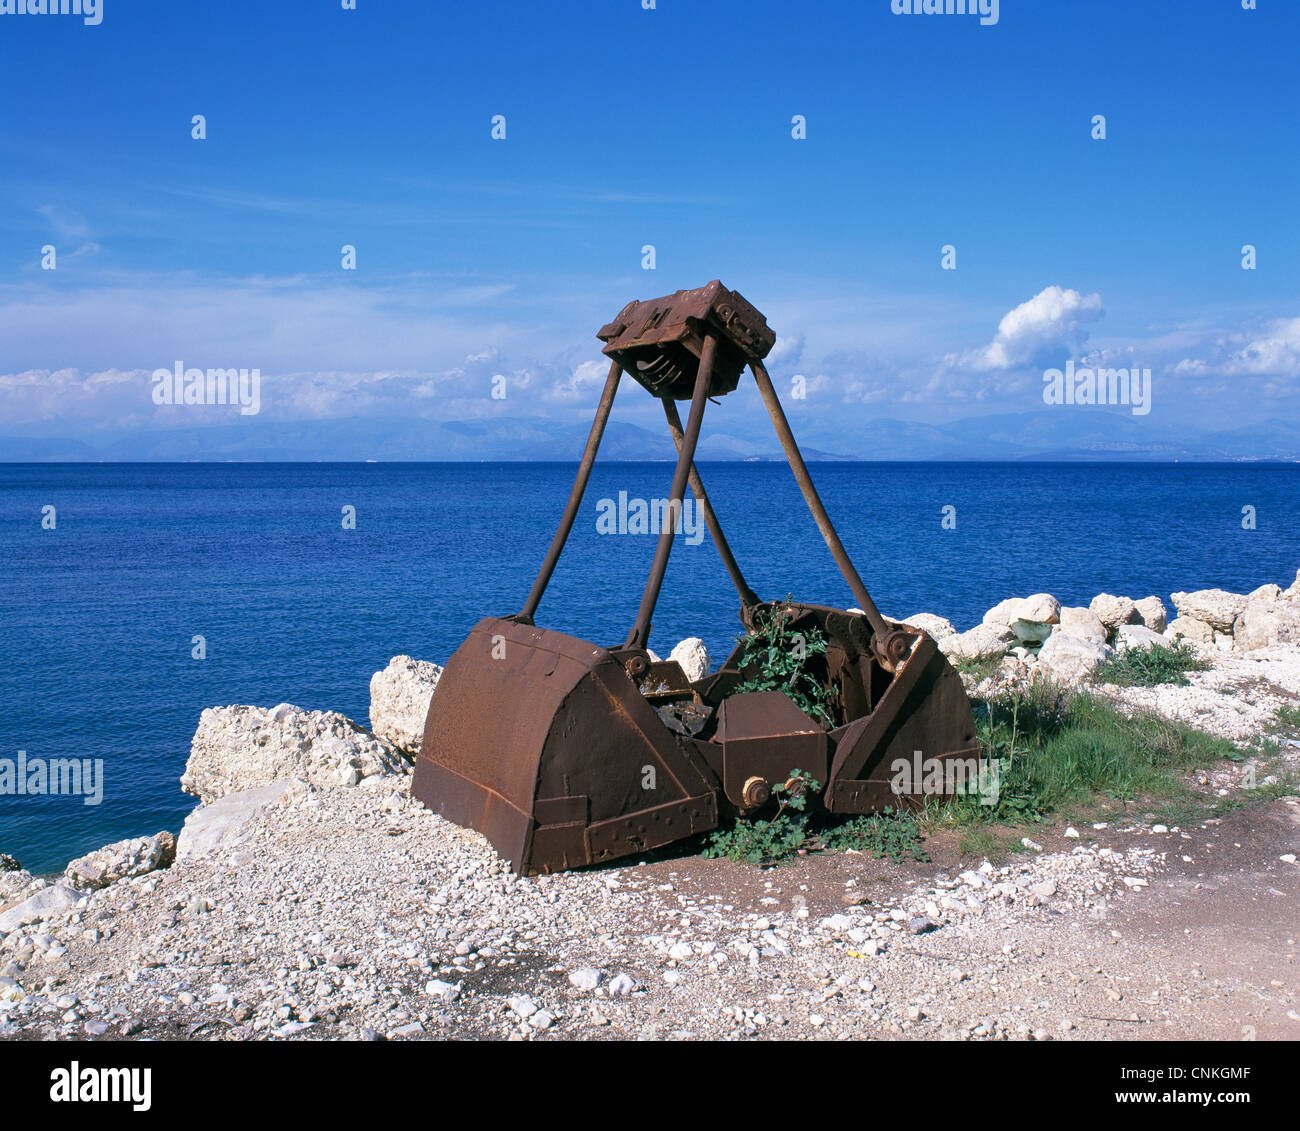 Umweltverschmutzung, Abfall, Unrat, Verrostete Baggerschaufel am Strand von Korfu, Ionische Inseln, Griechenland Stock Photo